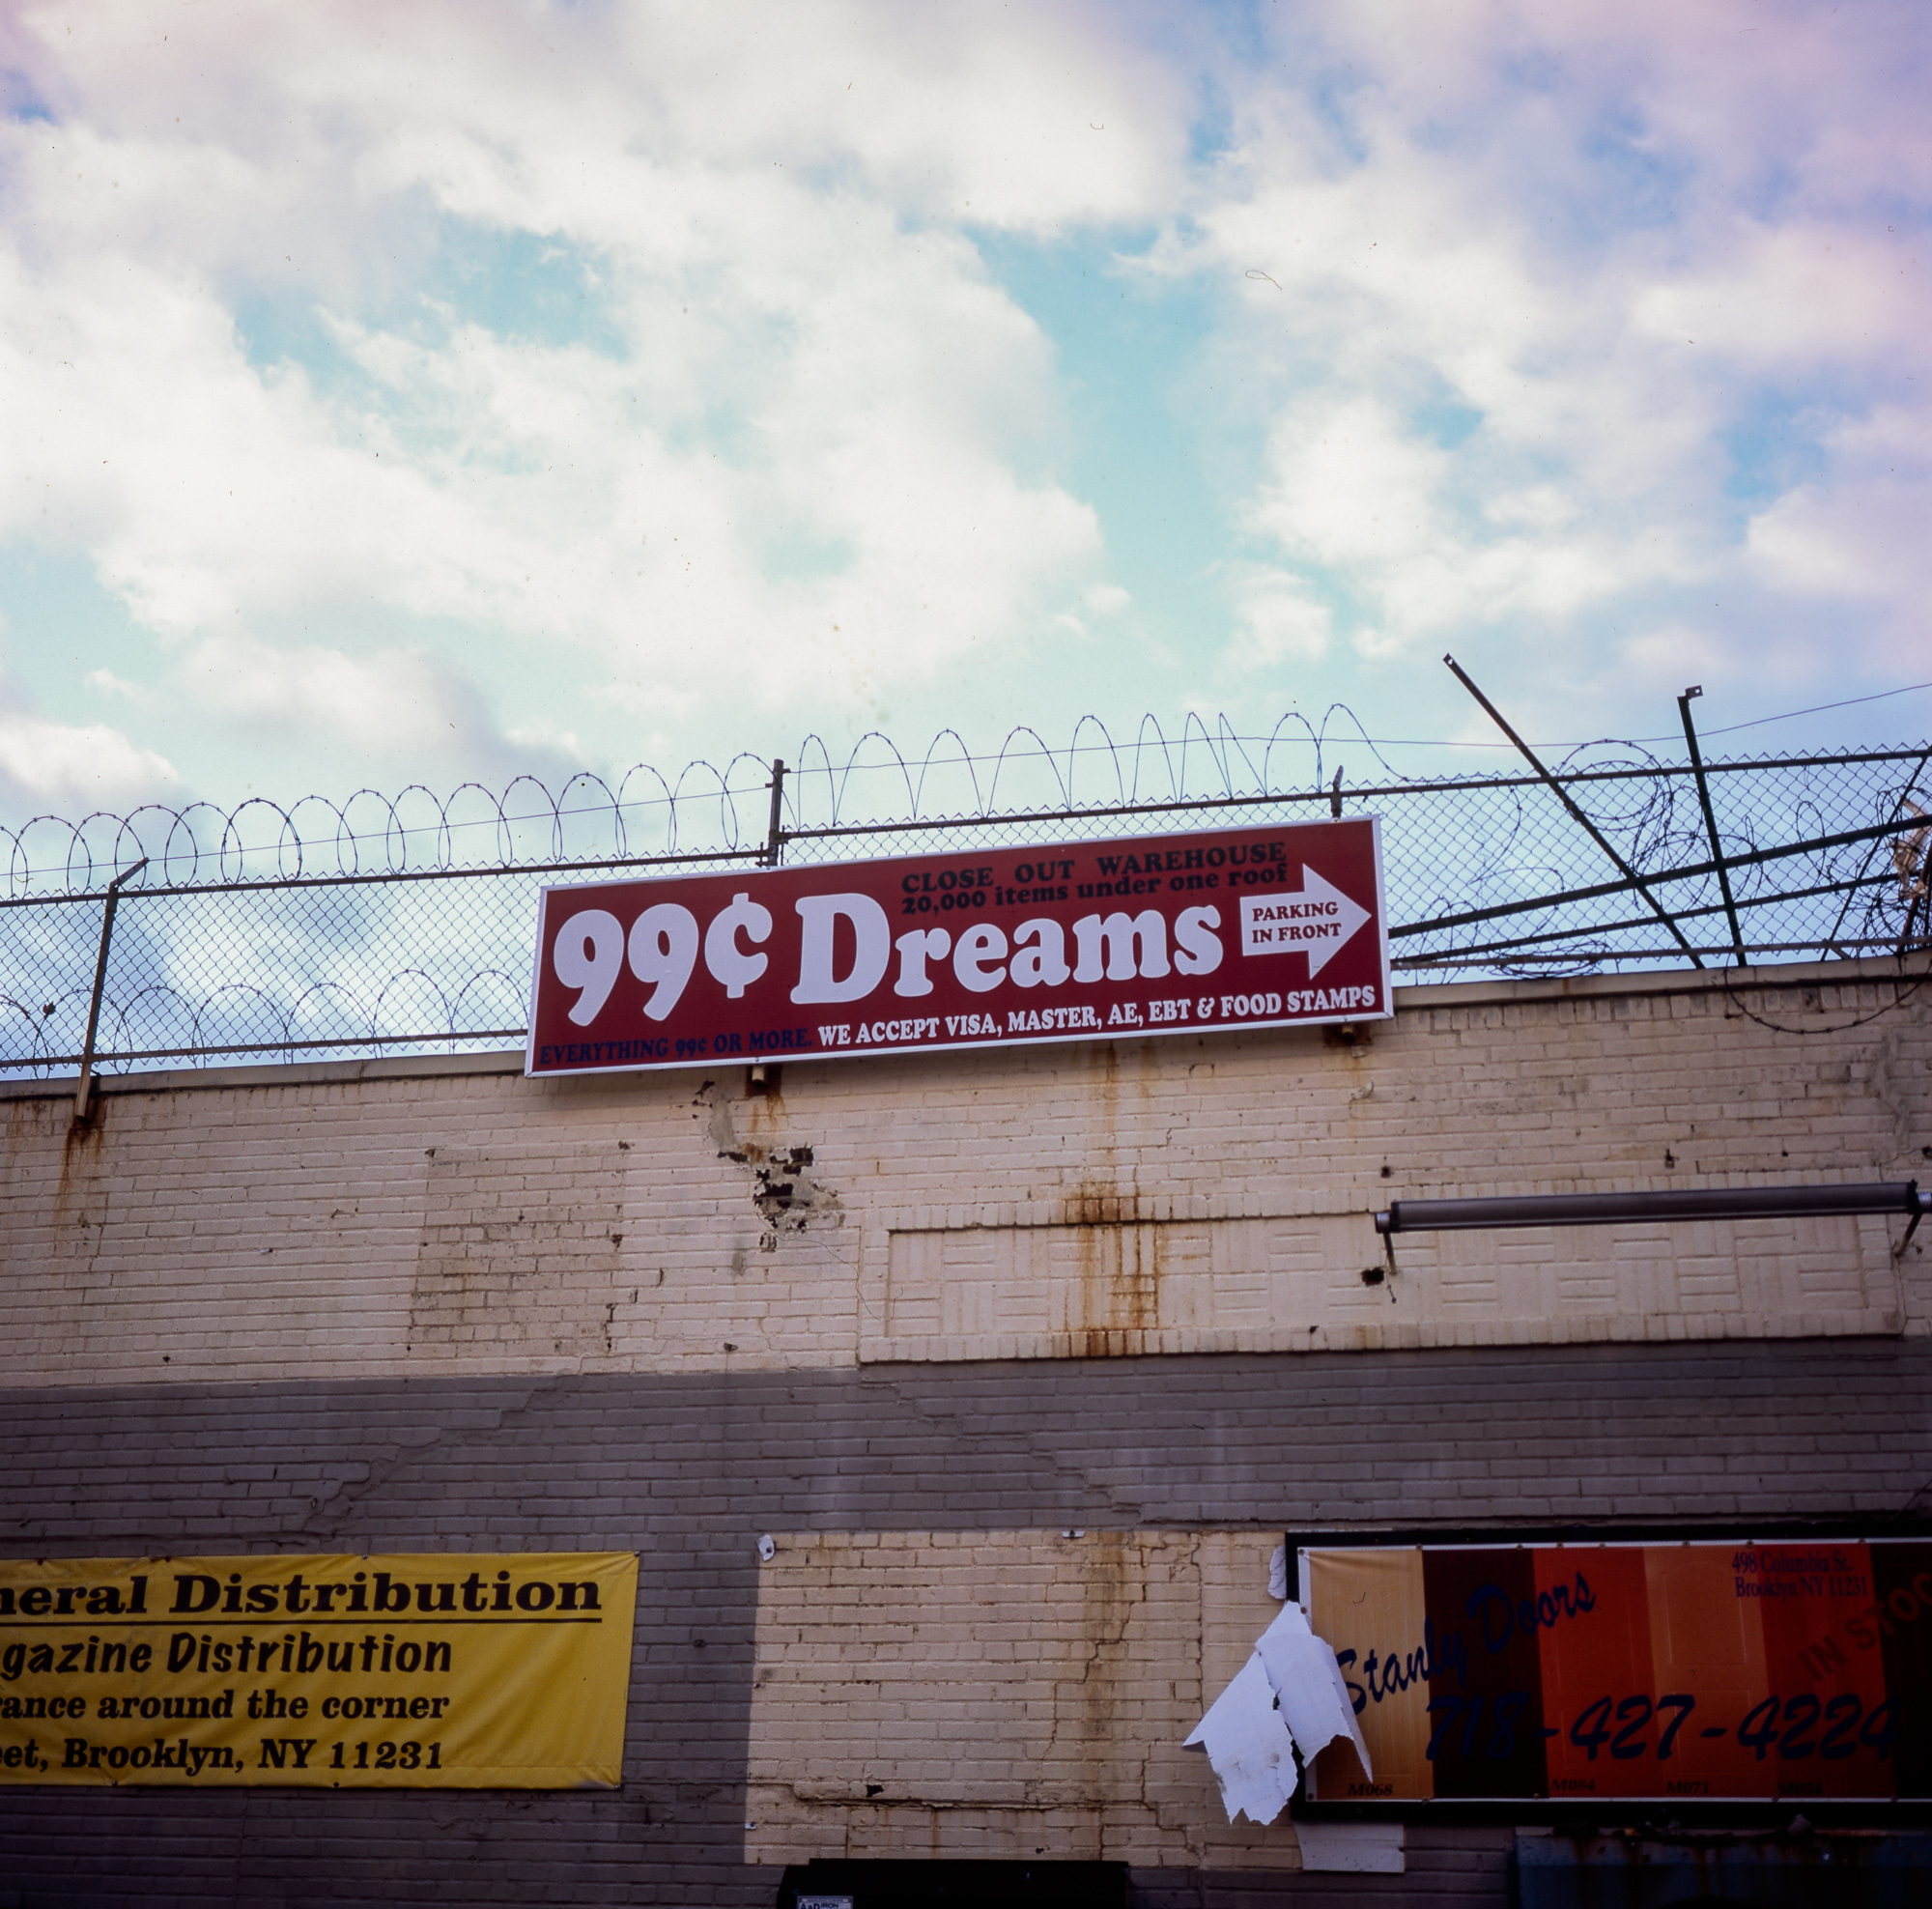 "99c Dreams" Brooklyn, NY, 2010